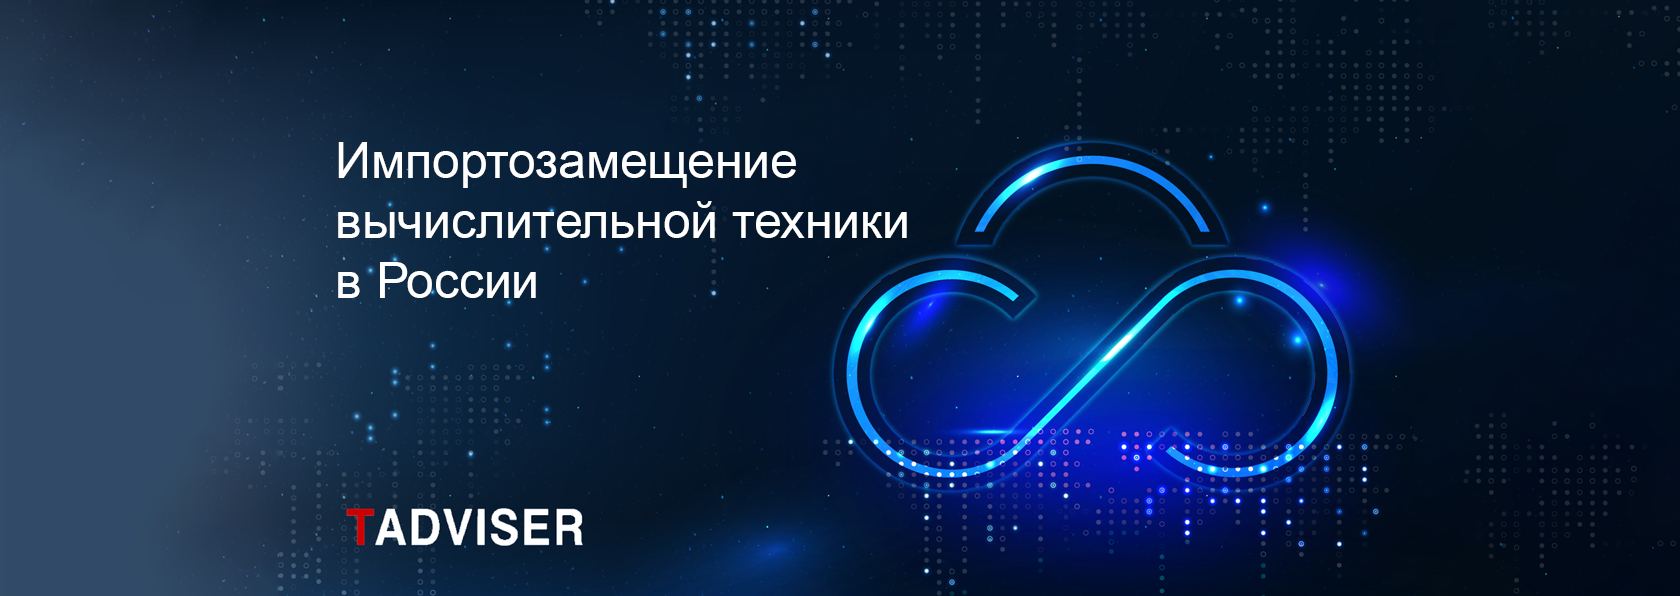 Скала^р вошла в топ российских производителей вычислительной техники